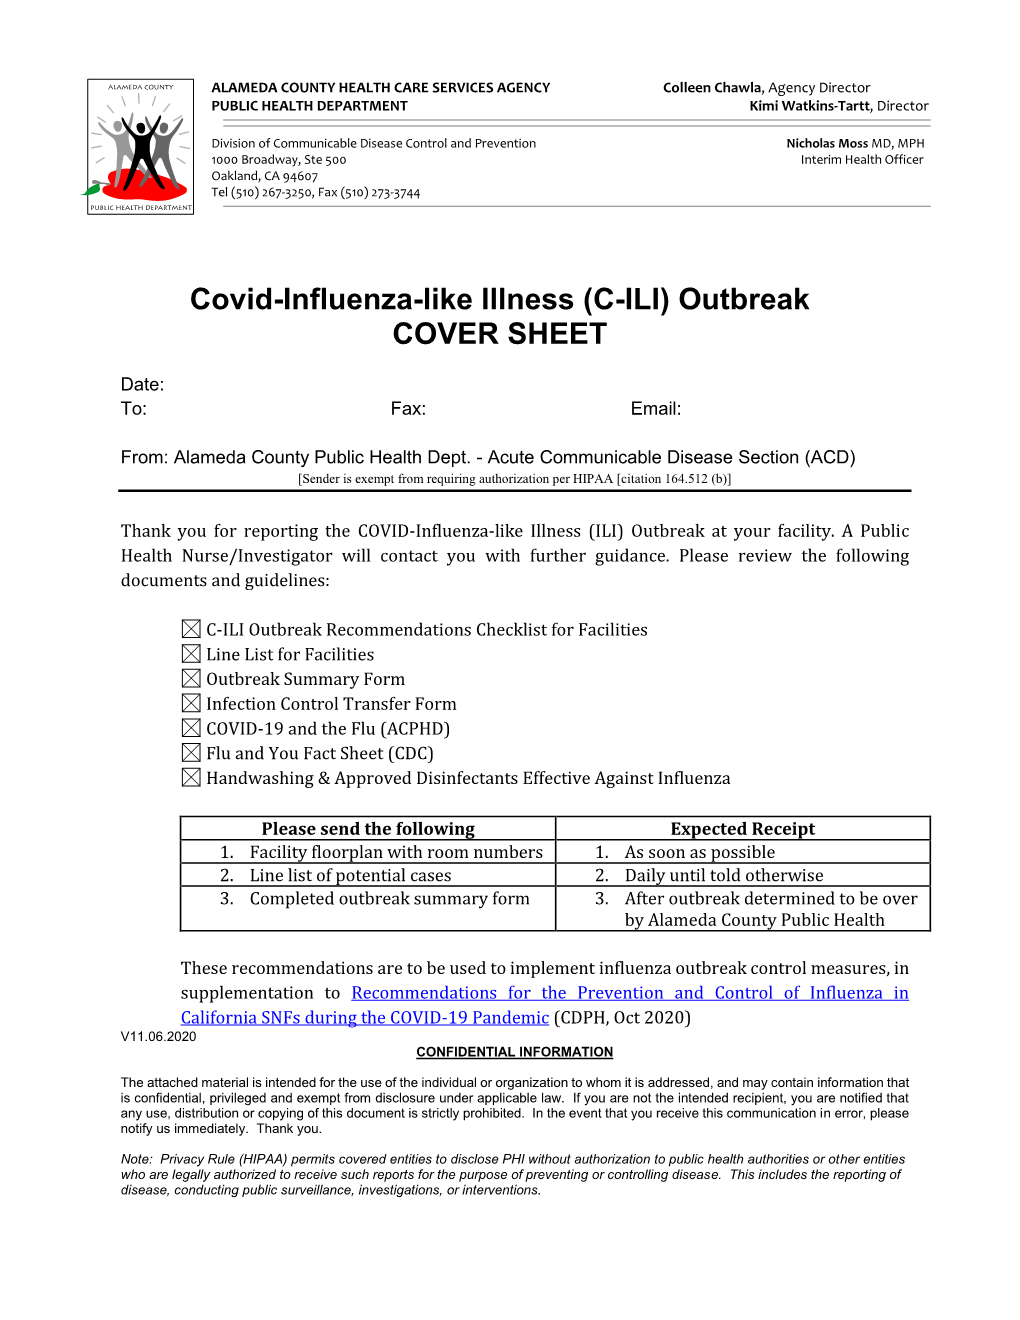 Covid-Influenza-Like Illness (C-ILI) Outbreak COVER SHEET